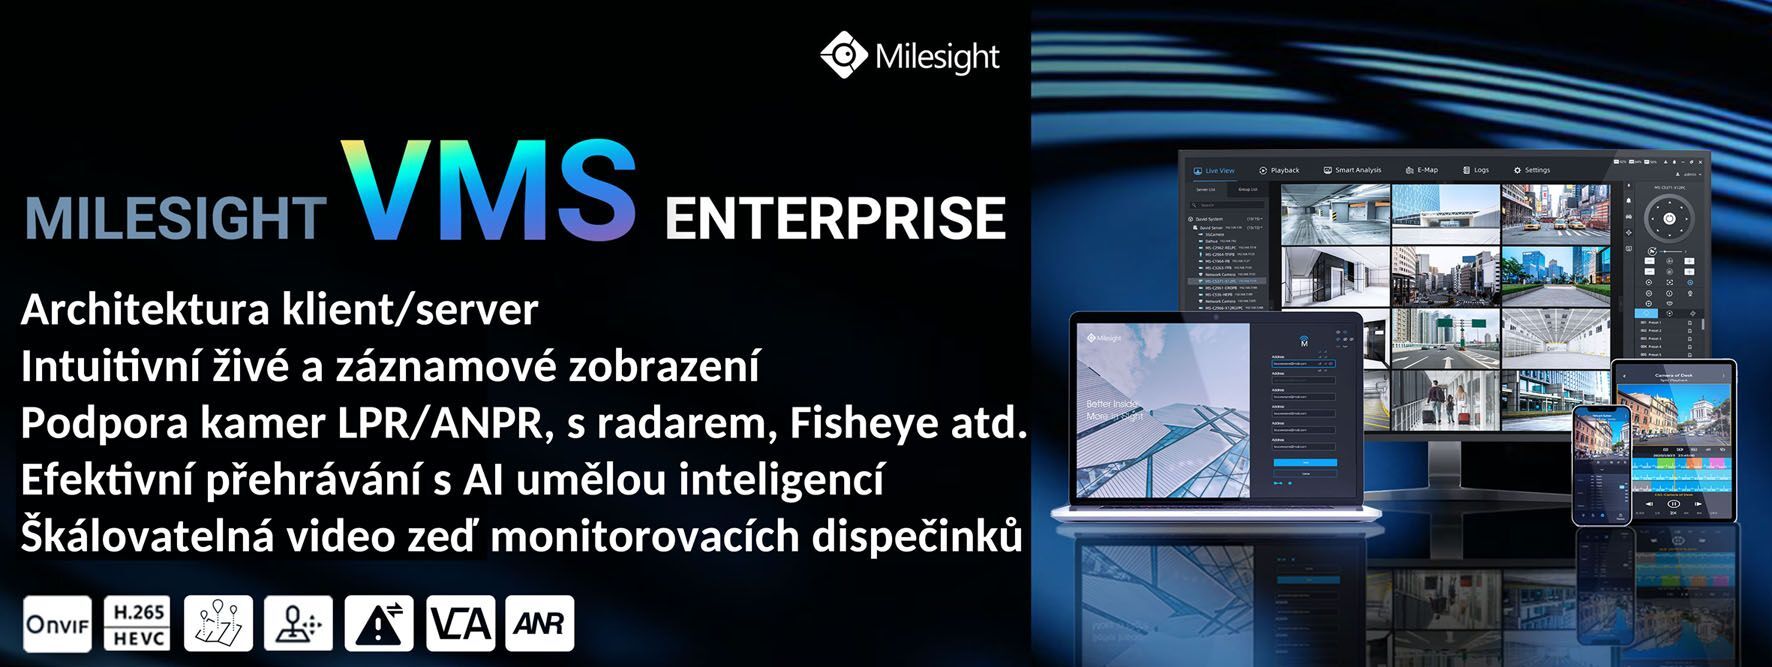 MS-MC-128CH Software VMS Enterprise